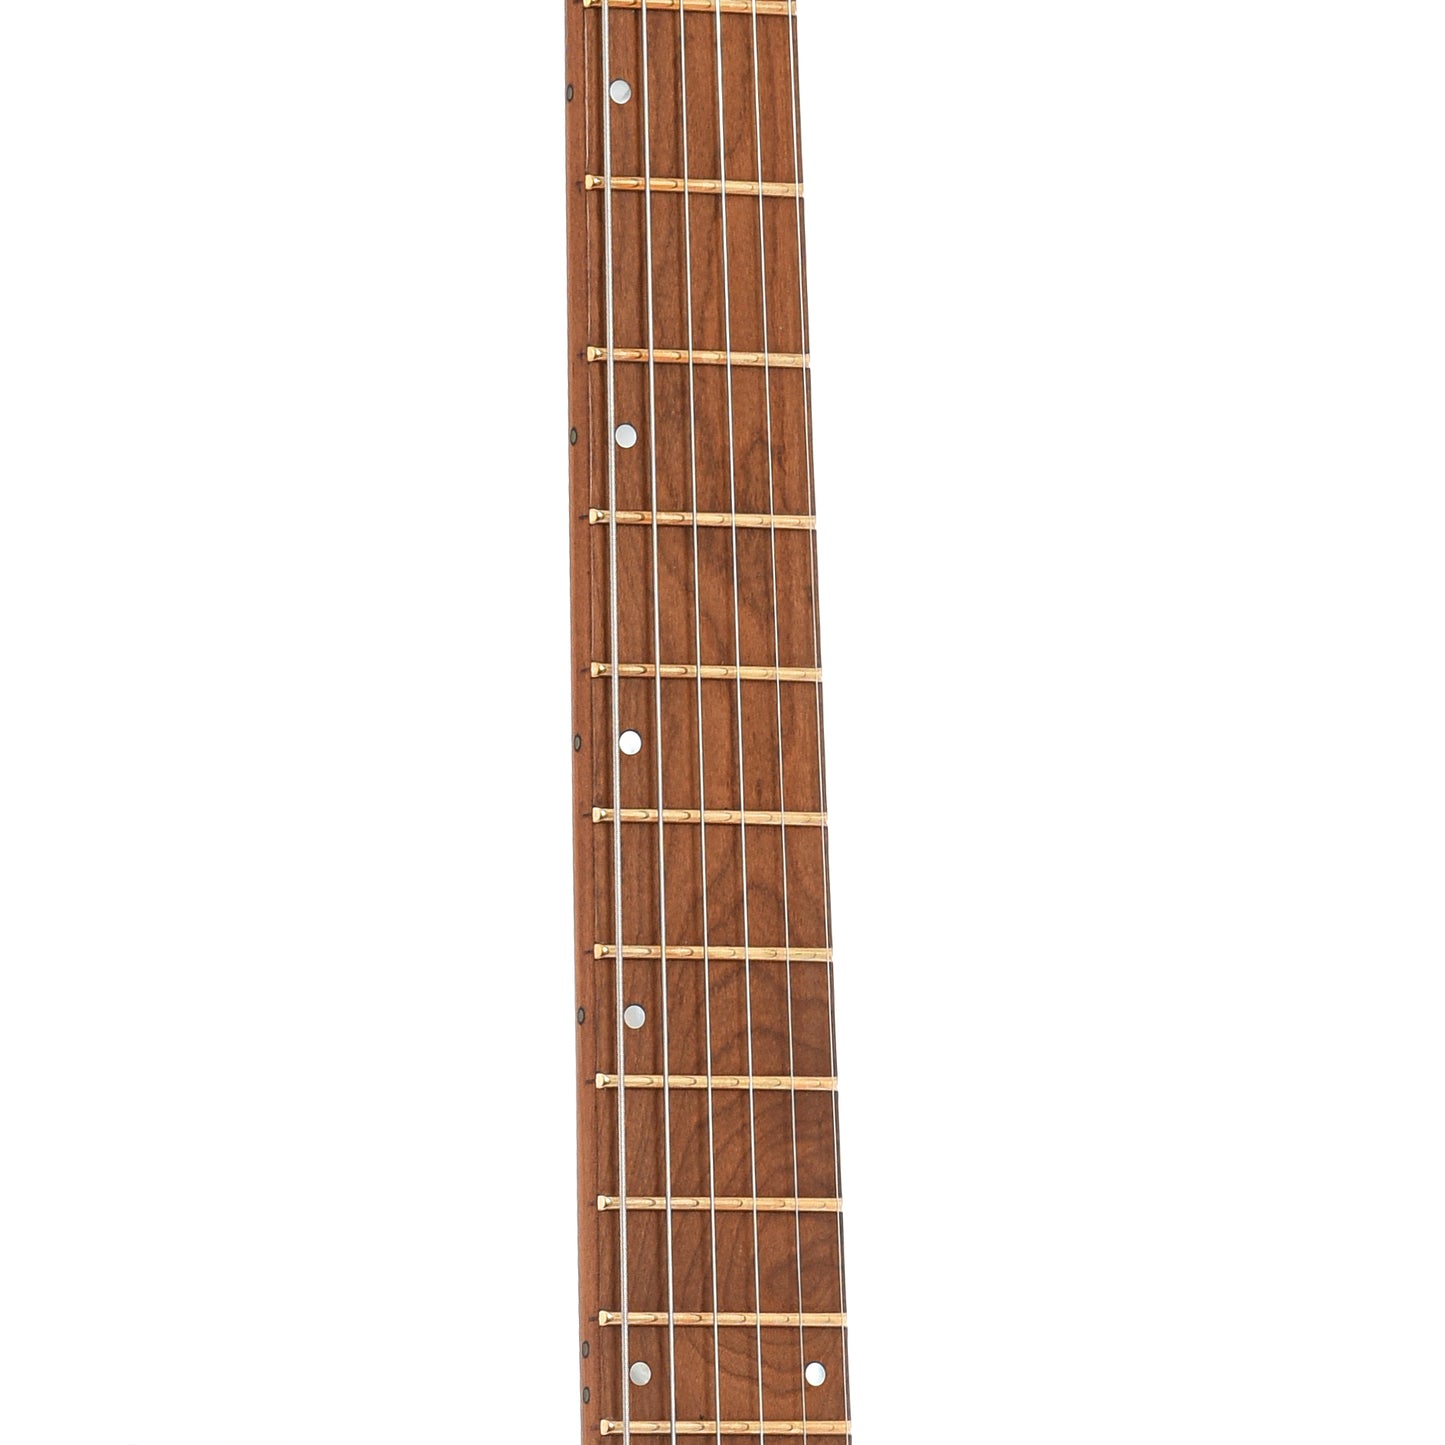 Fretboard of Ibanez Q52 Electric Guitar, Laser Blue Matte